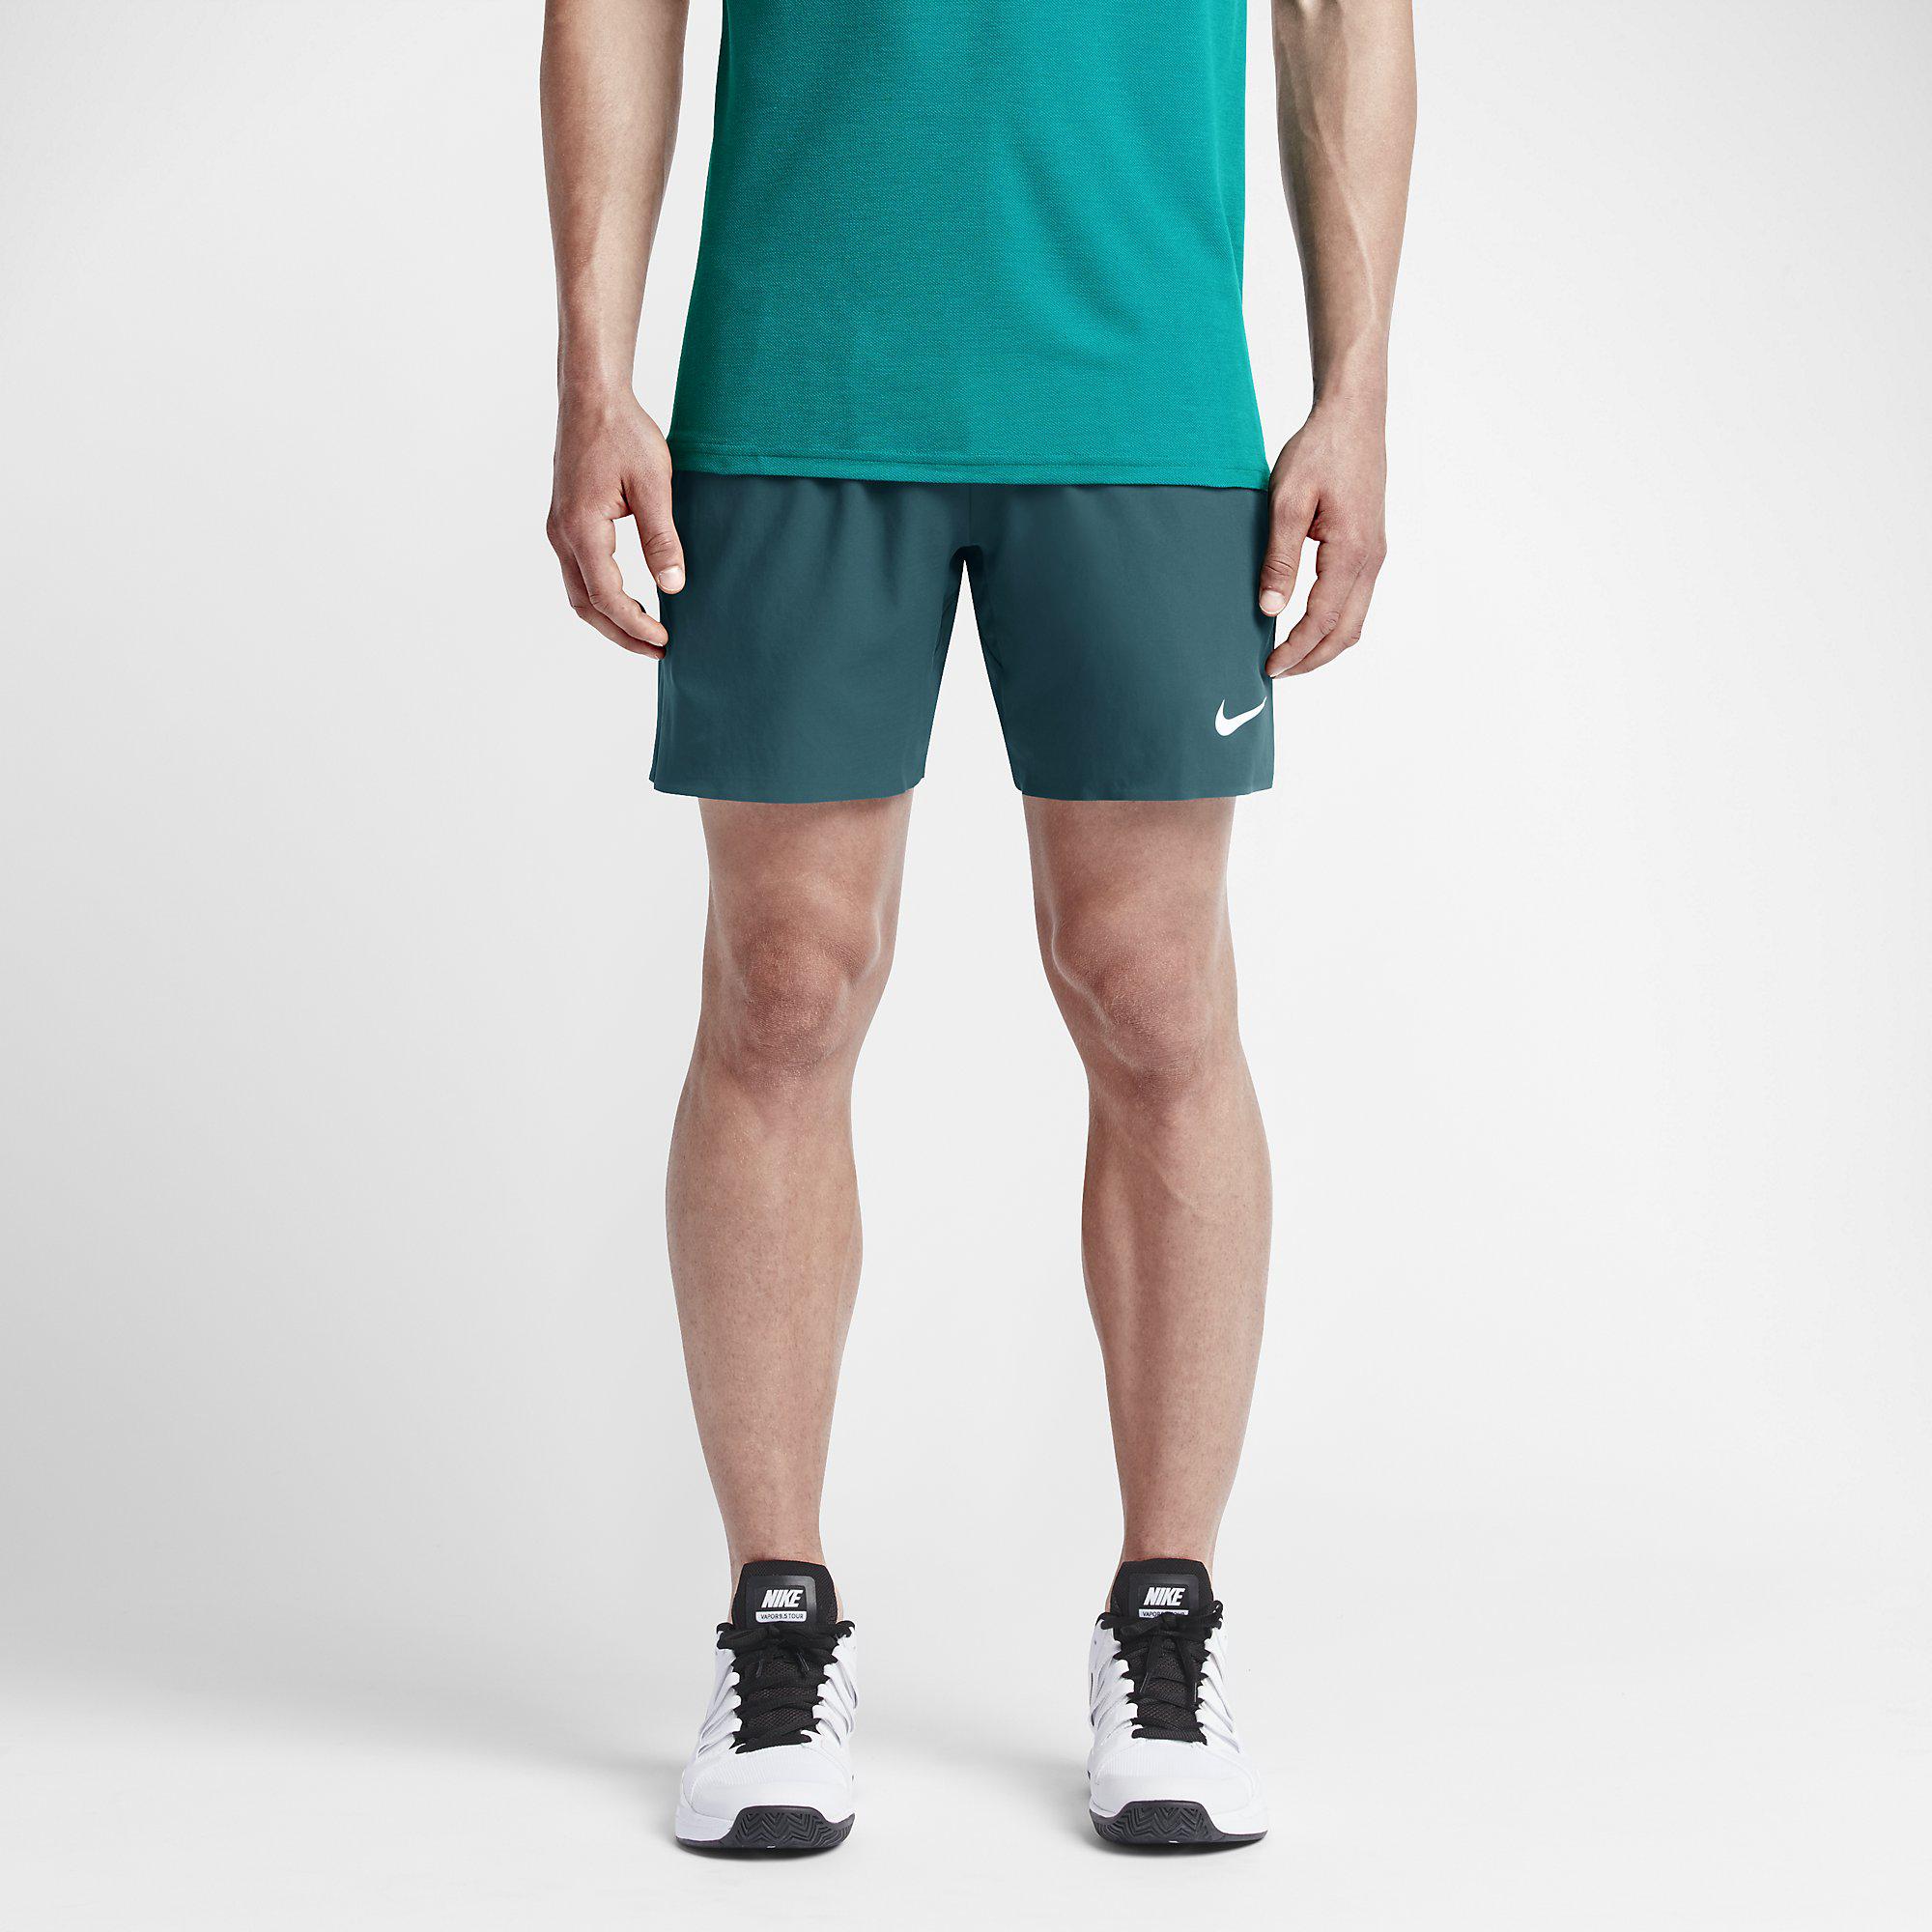 Macadán opción búnker Nike Mens Premier Gladiator 7" Shorts - Teal/Hot Lava - Tennisnuts.com